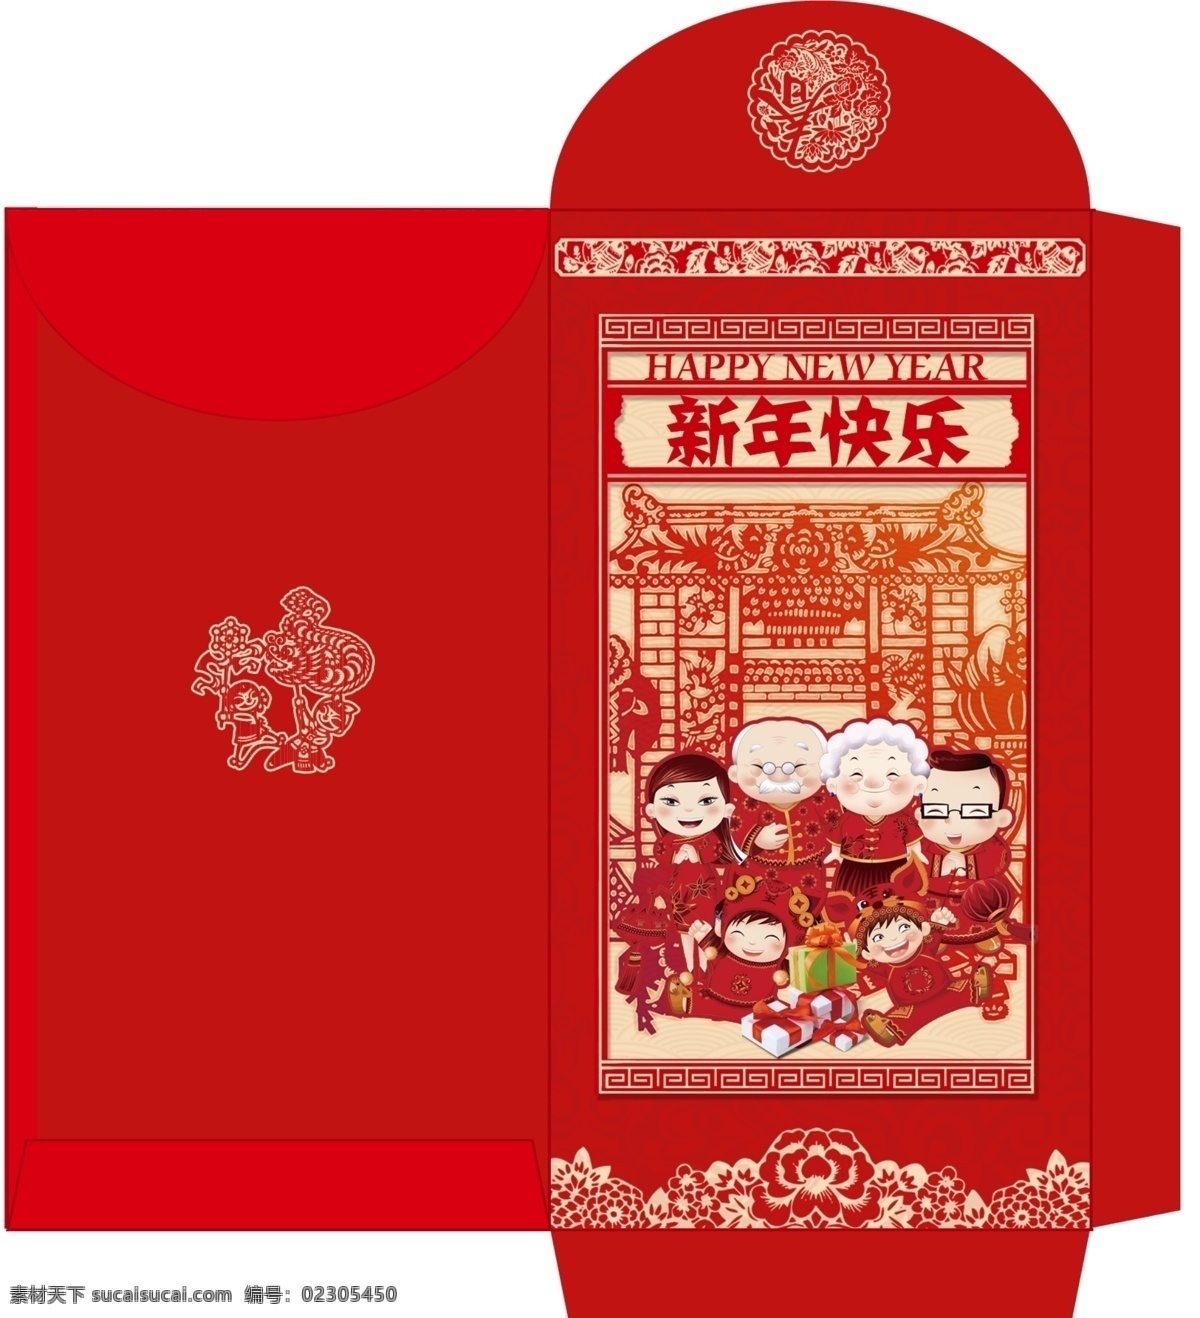 红色中国风 新年红包设计 利是封 原创 婚礼 红包 结婚 送礼 包装设计 新年红包 节日 设计图 双囍红包设计